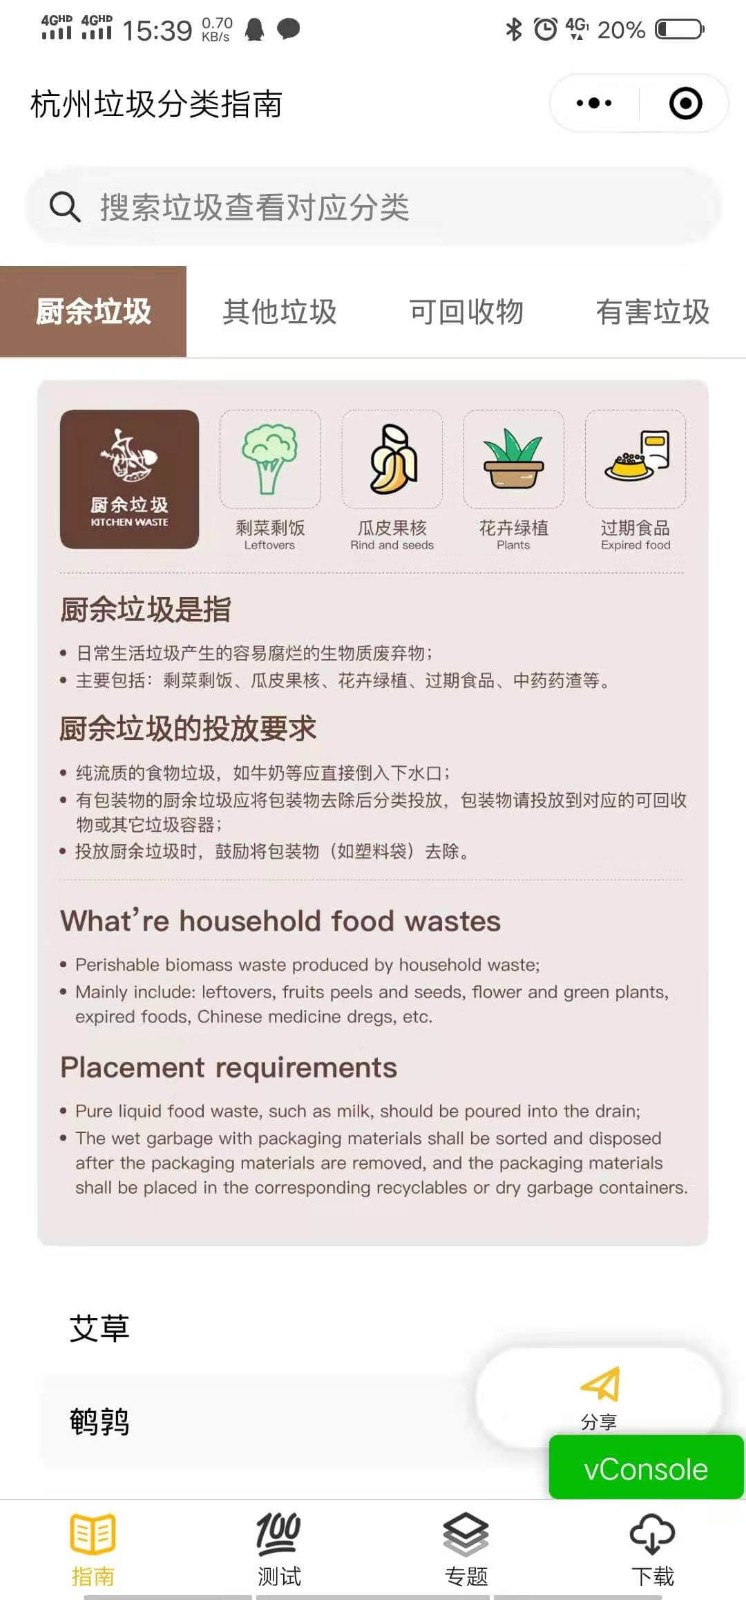 杭州垃圾分类指南_杭州垃圾分类指南小程序_杭州垃圾分类指南微信小程序